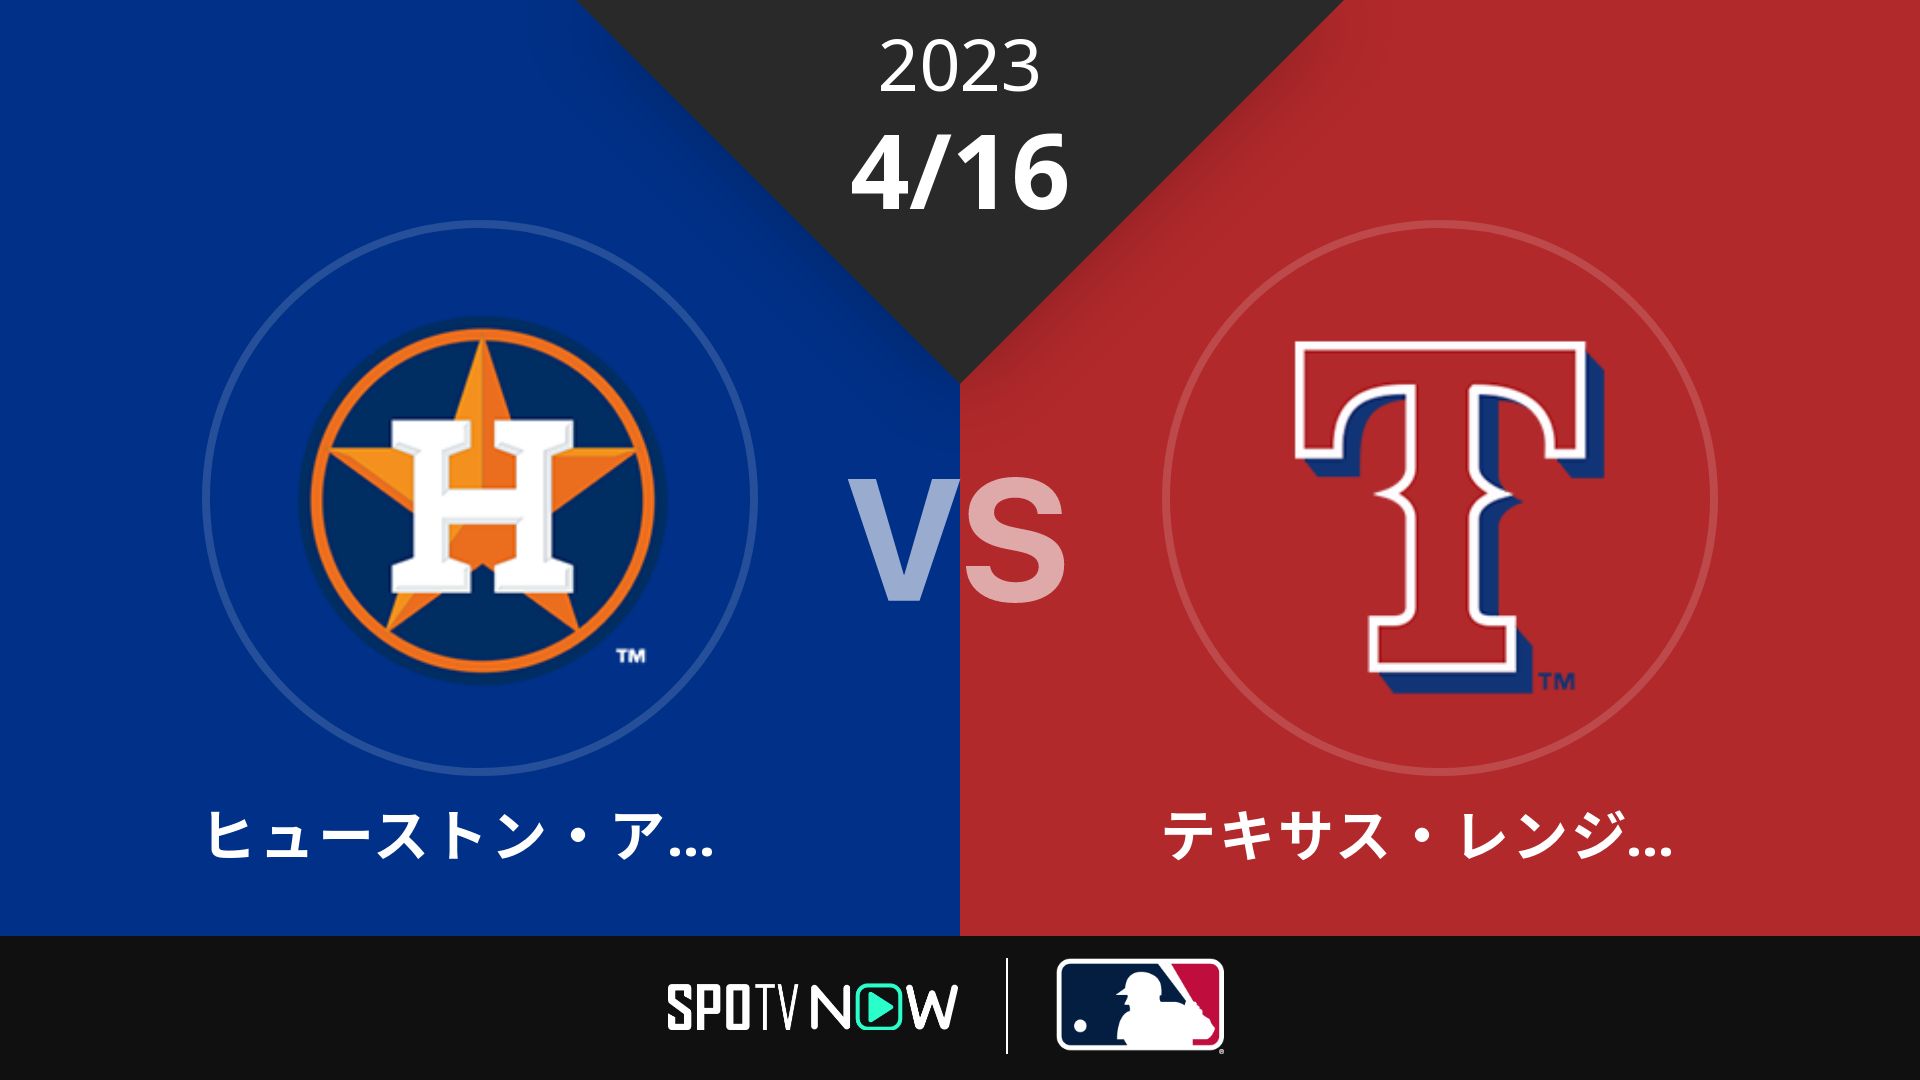 2023/4/16 アストロズ vs レンジャーズ [MLB]